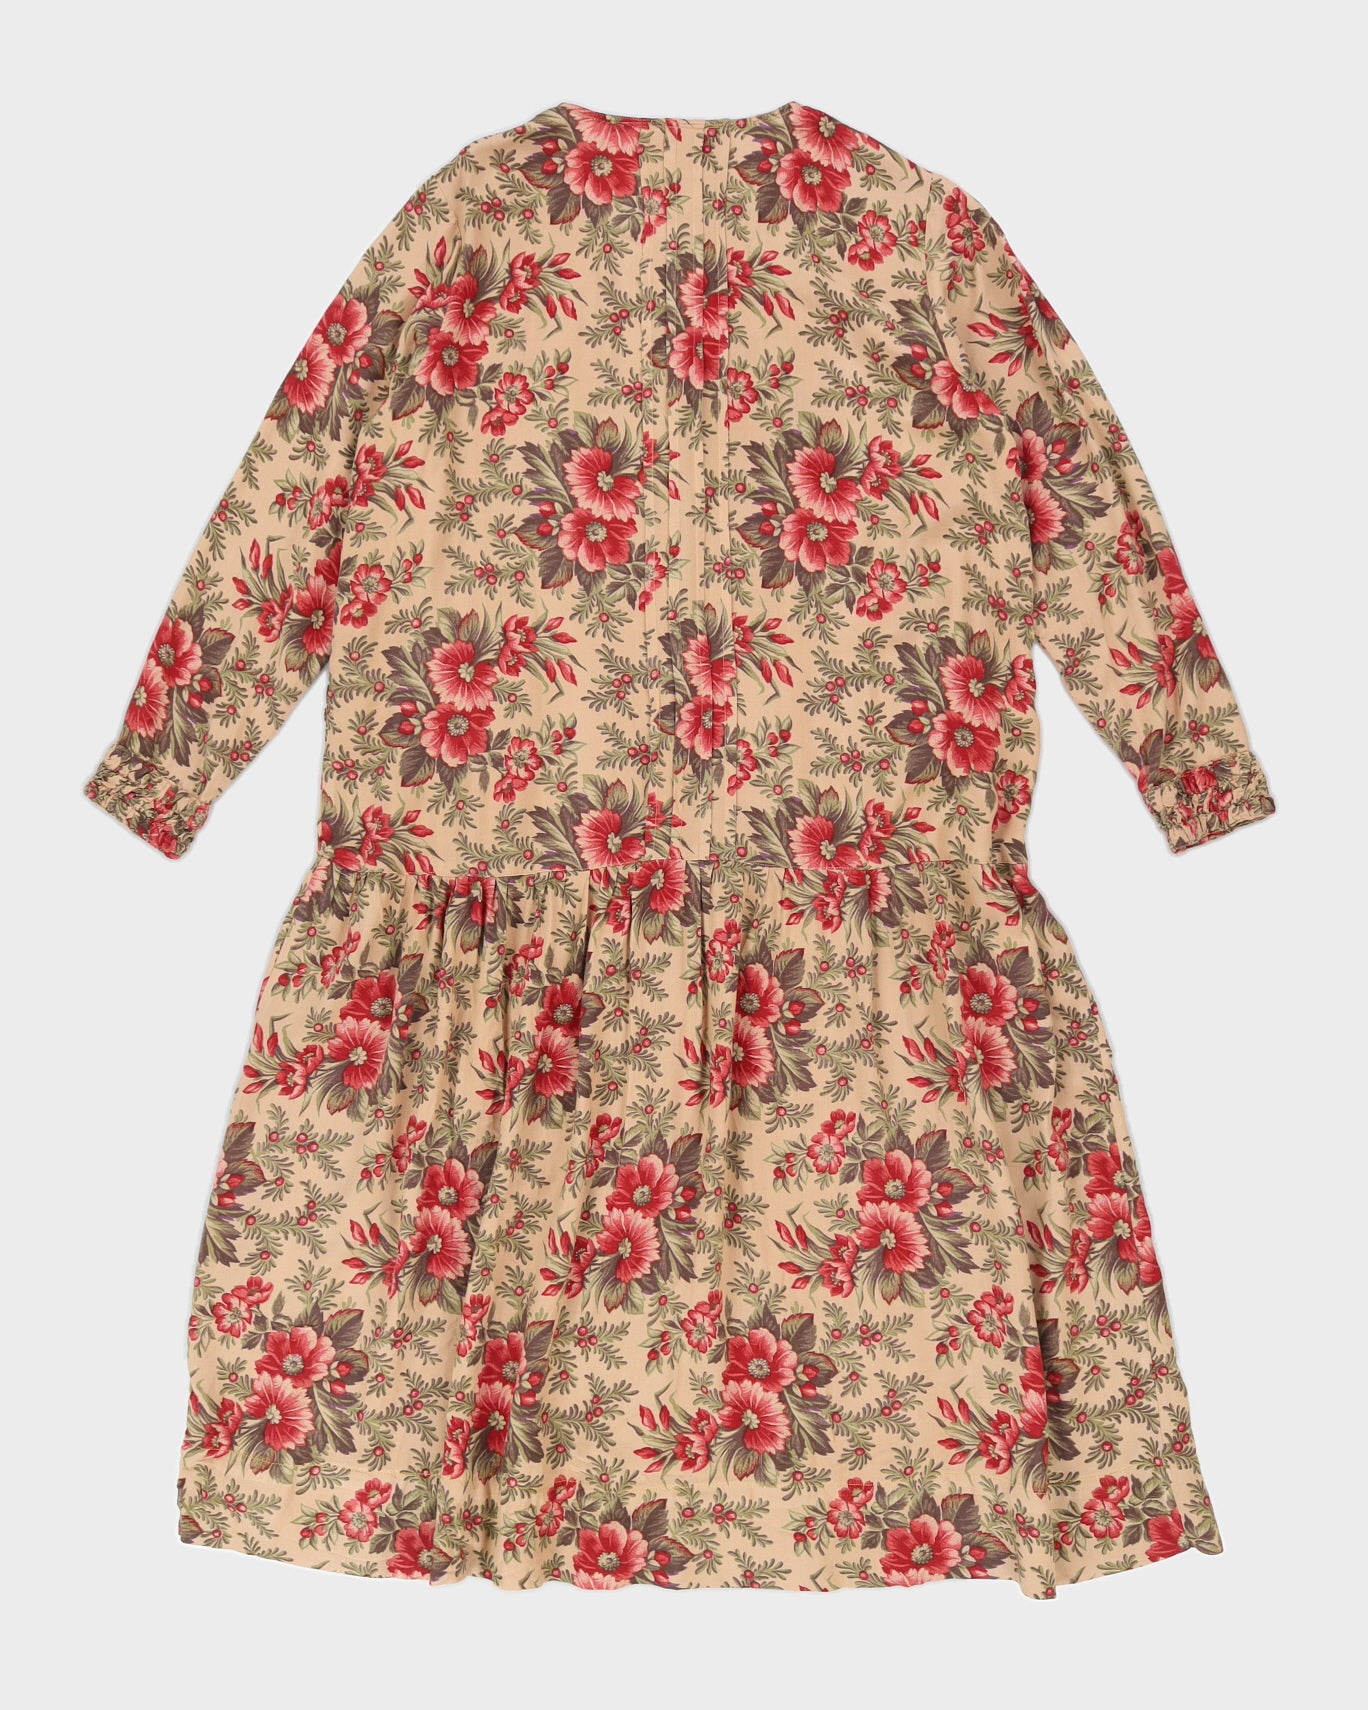 Vintage 80s April Cornell Oversize Floral Button Up Dress - M